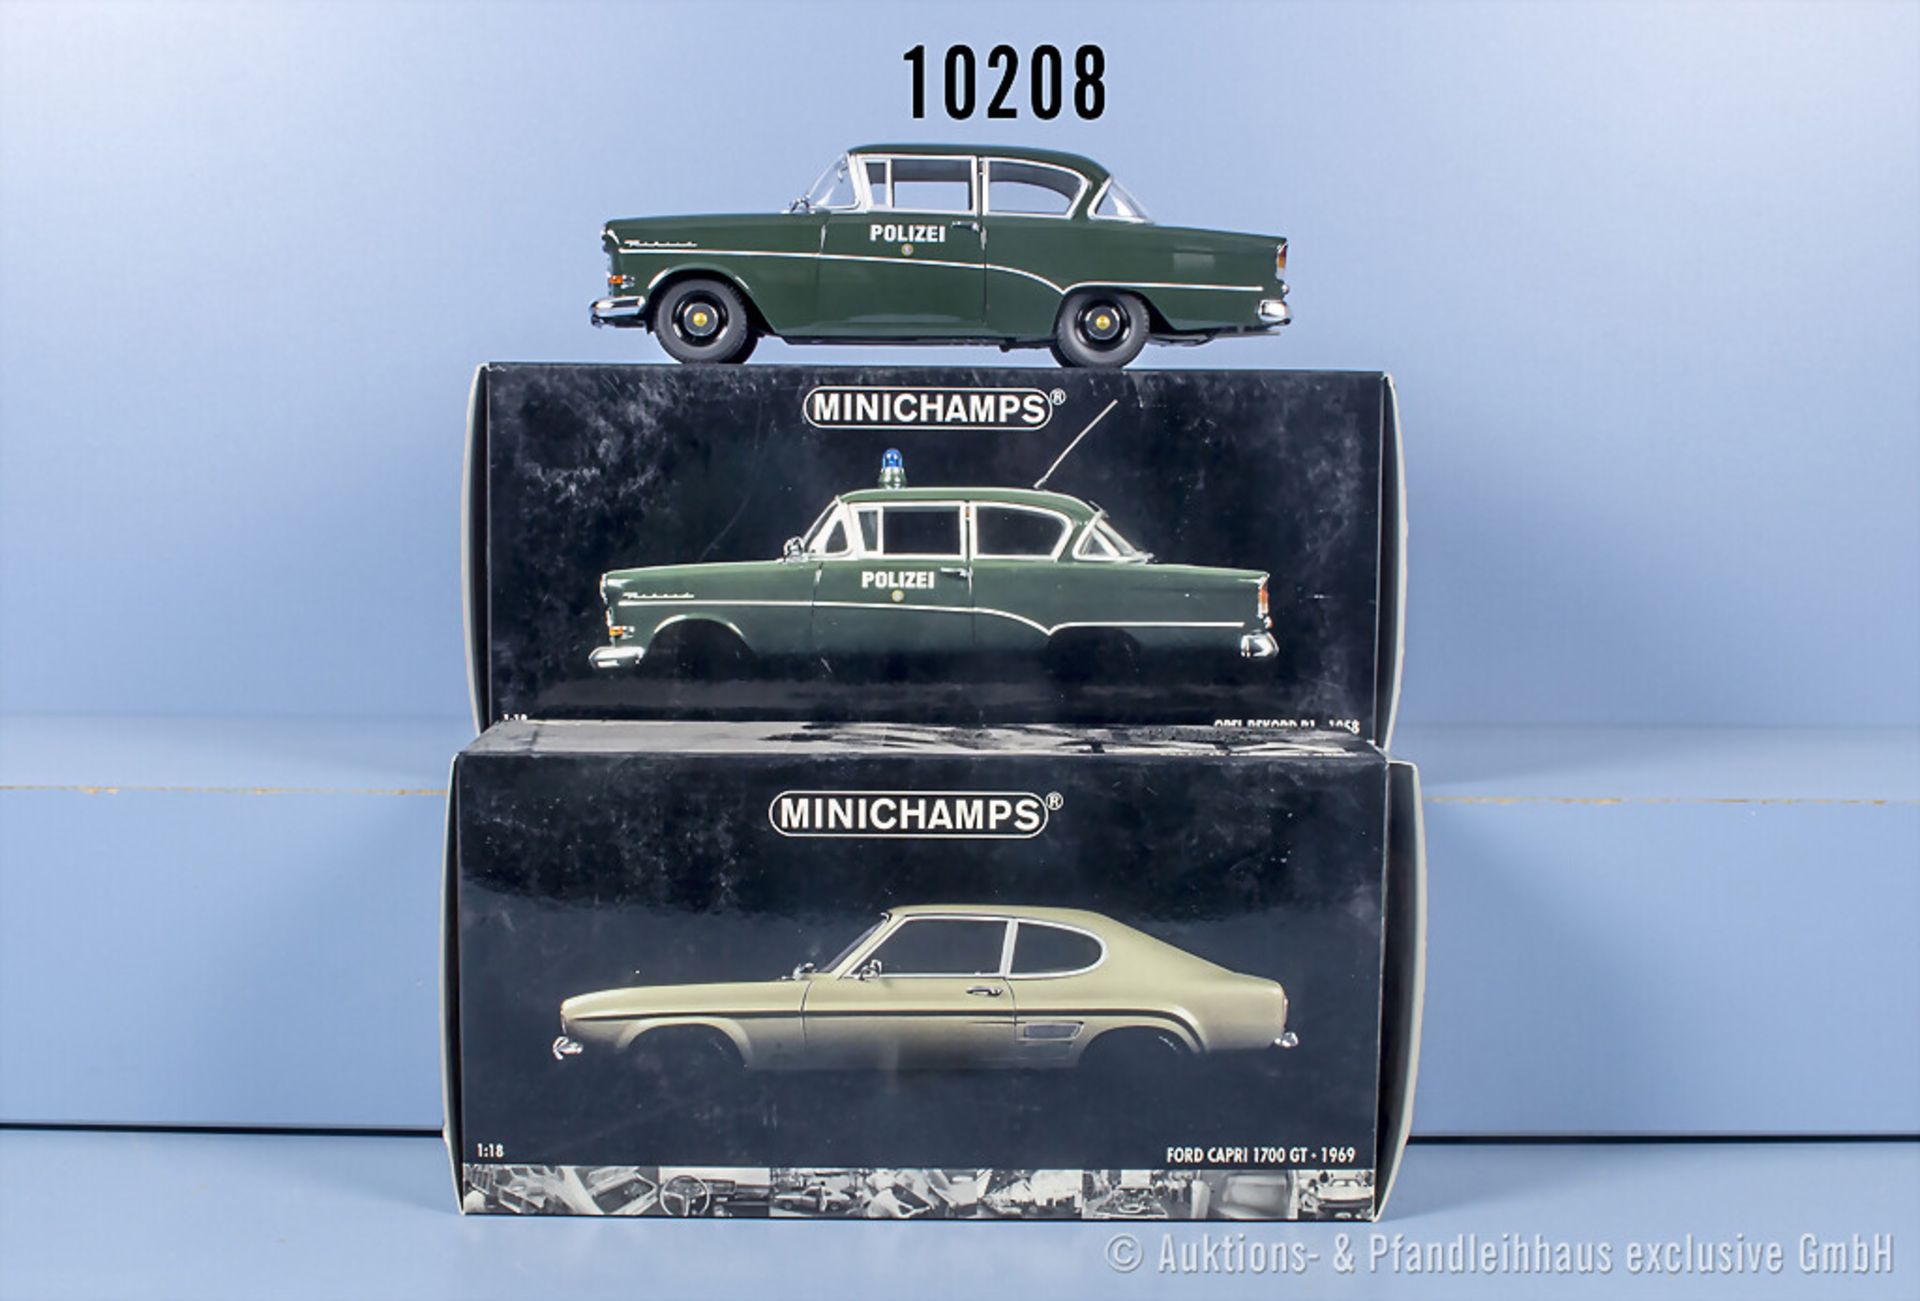 2 Minichamps Modellfahrzeuge, Opel Rekord P1 1958 (Blaulicht fehlt) und Ford Capri 1700 ...